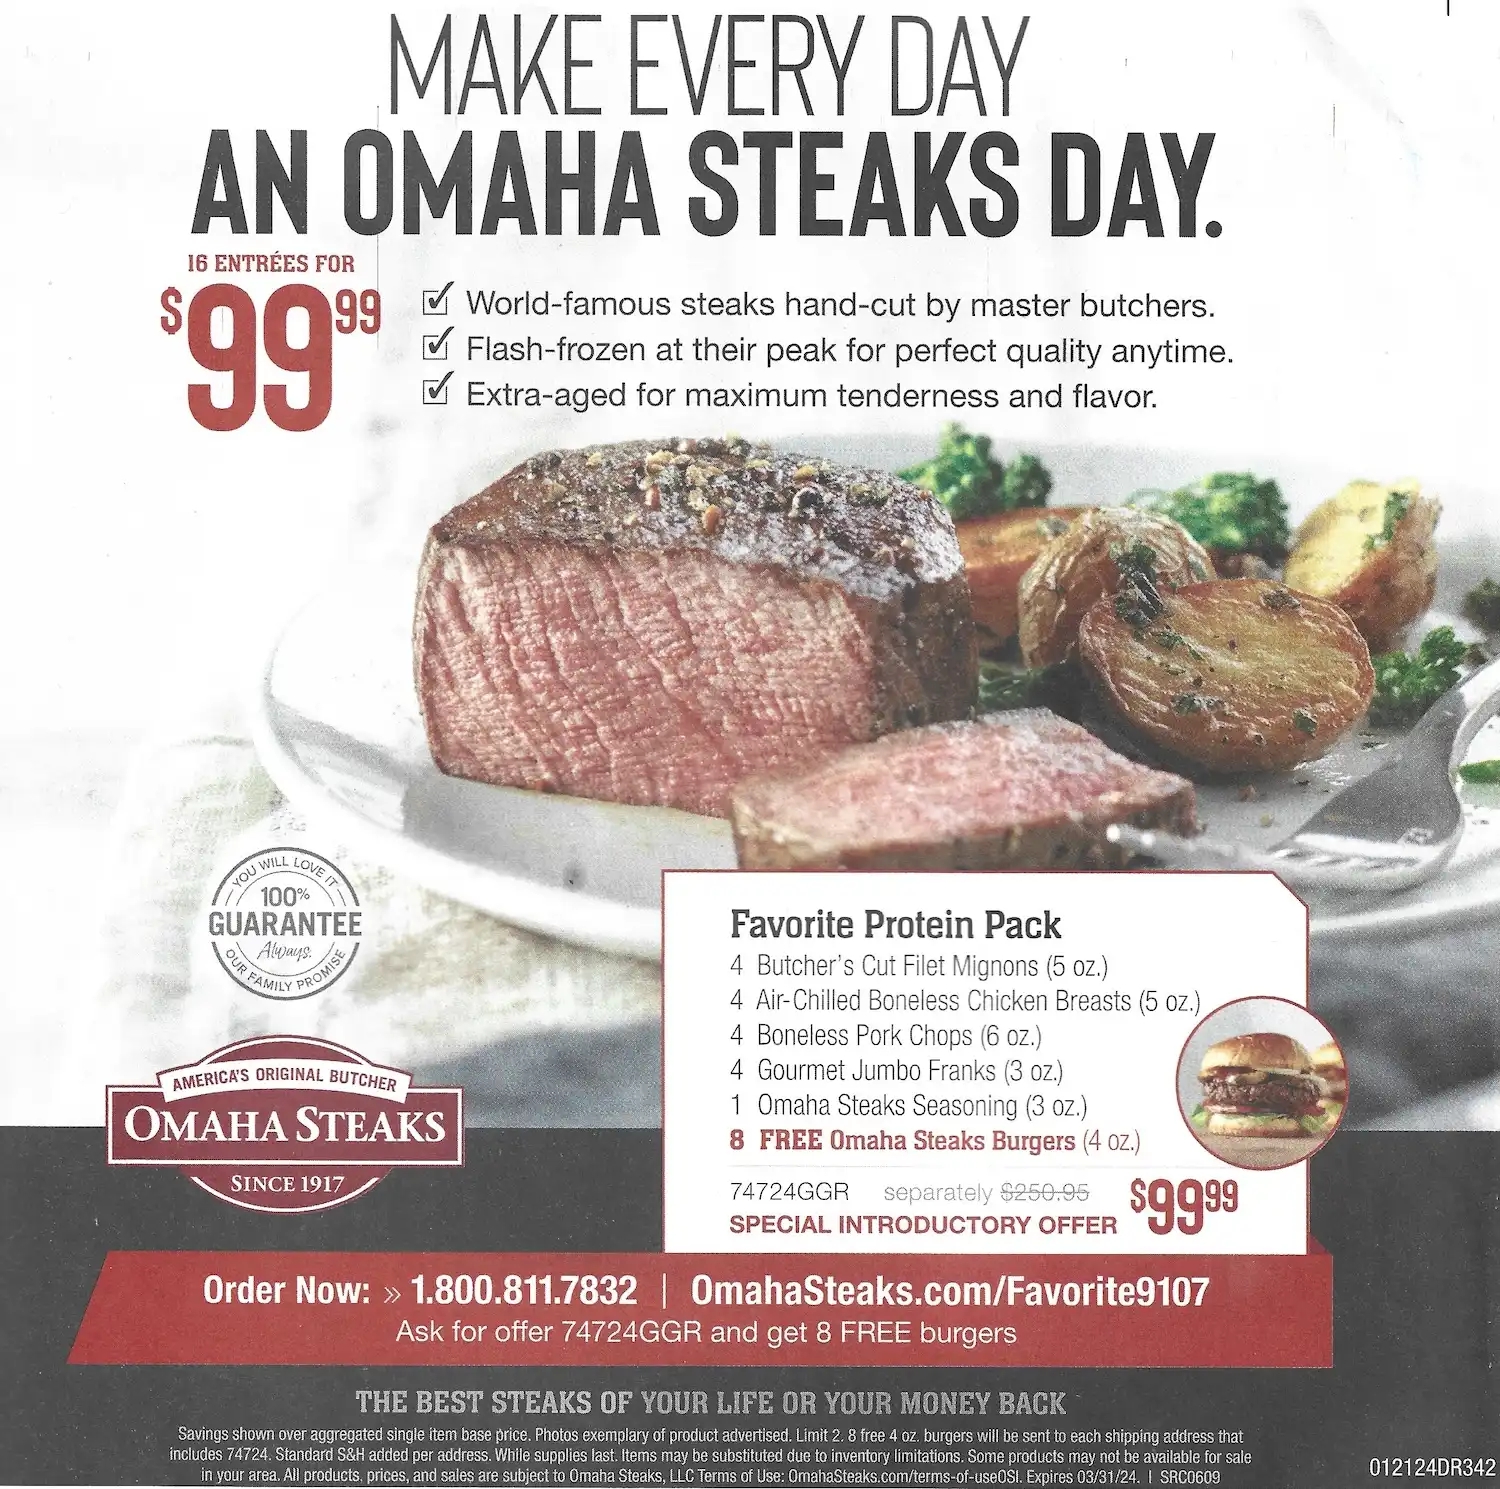 Omaha Steaks Favorite Protein Pack + 8 Free Steak Burgers Promo Code